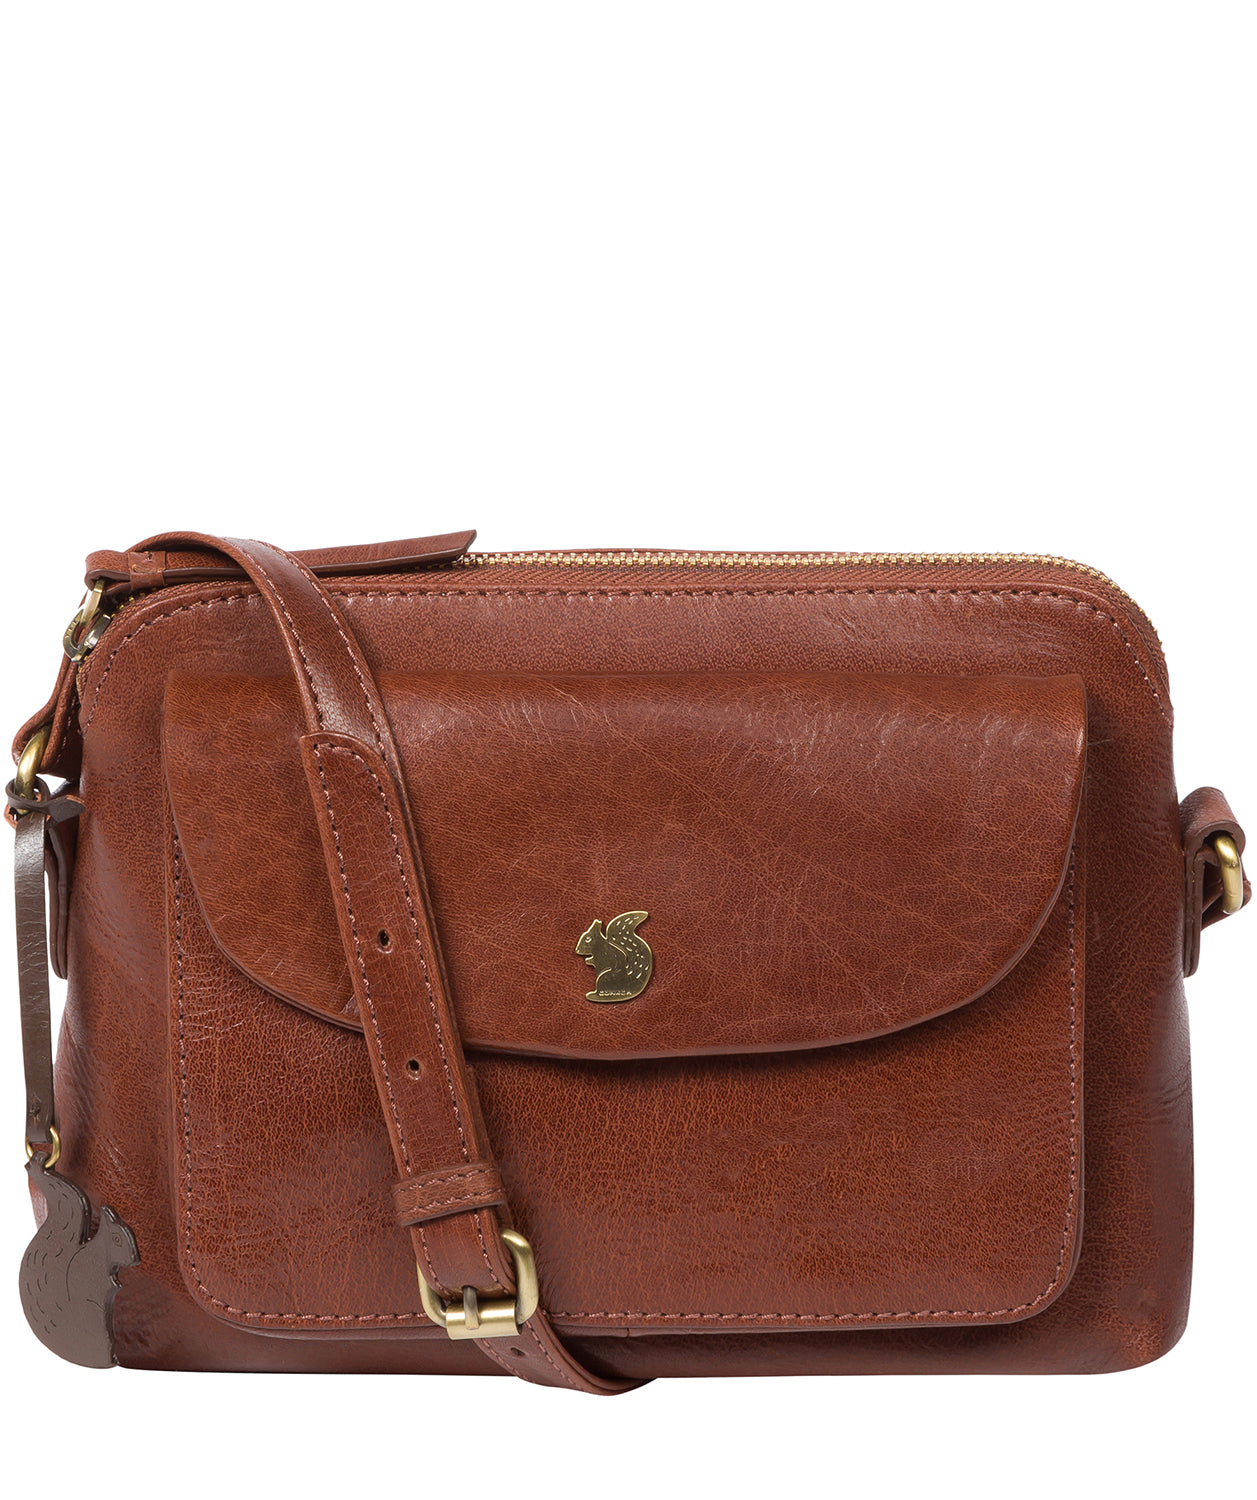 Vintage Leather Cross Body Shoulder Bag Honey – G22